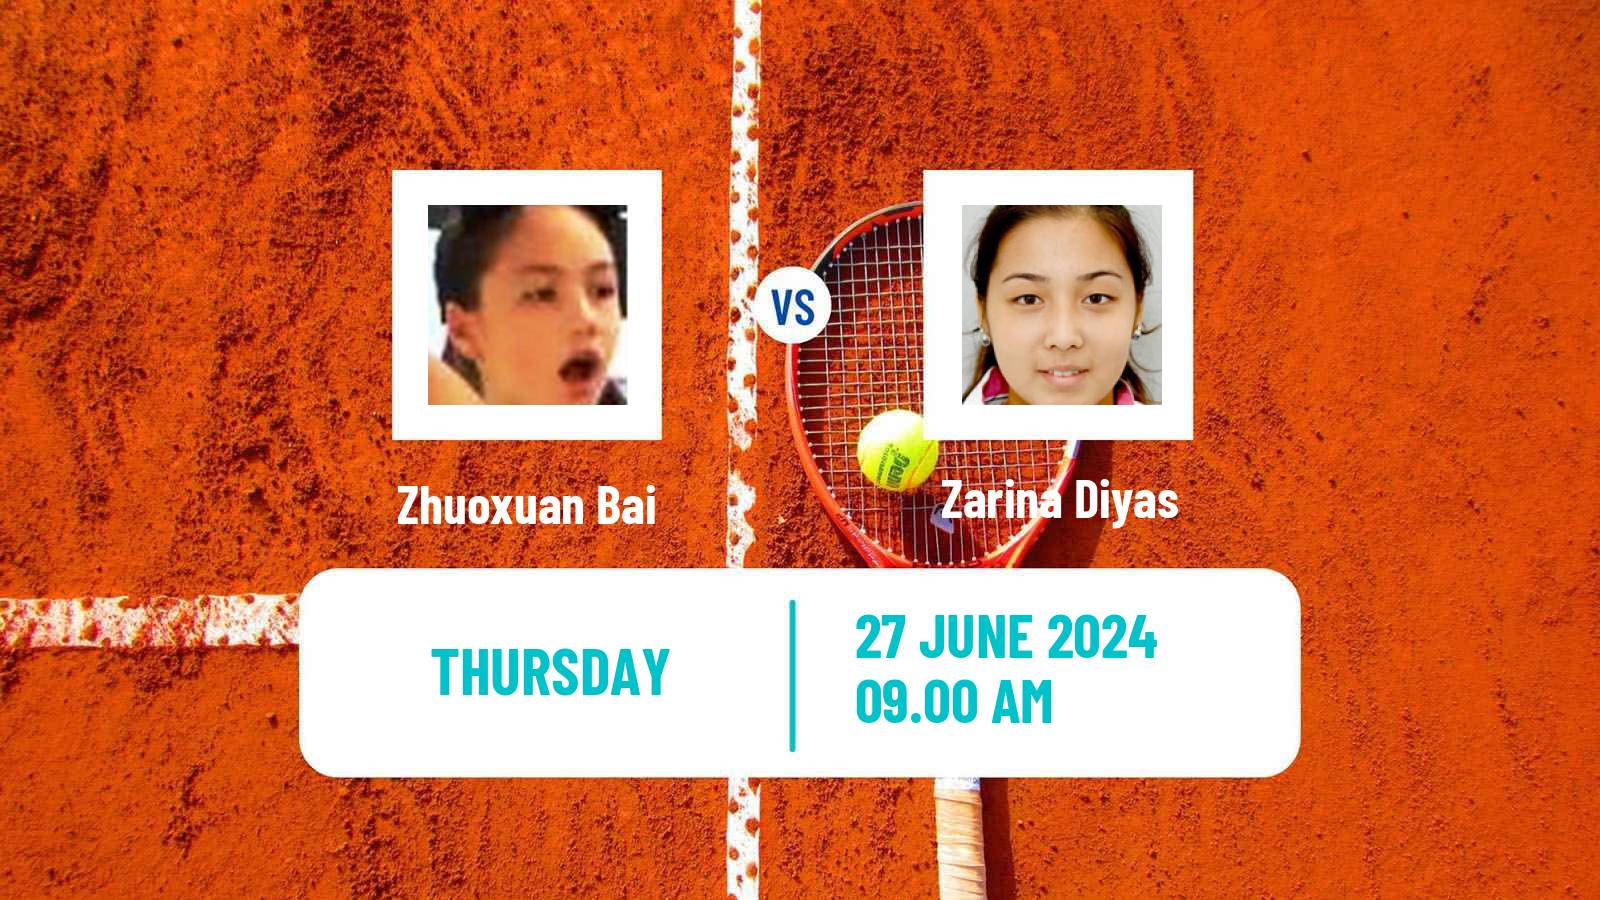 Tennis WTA Wimbledon Zhuoxuan Bai - Zarina Diyas